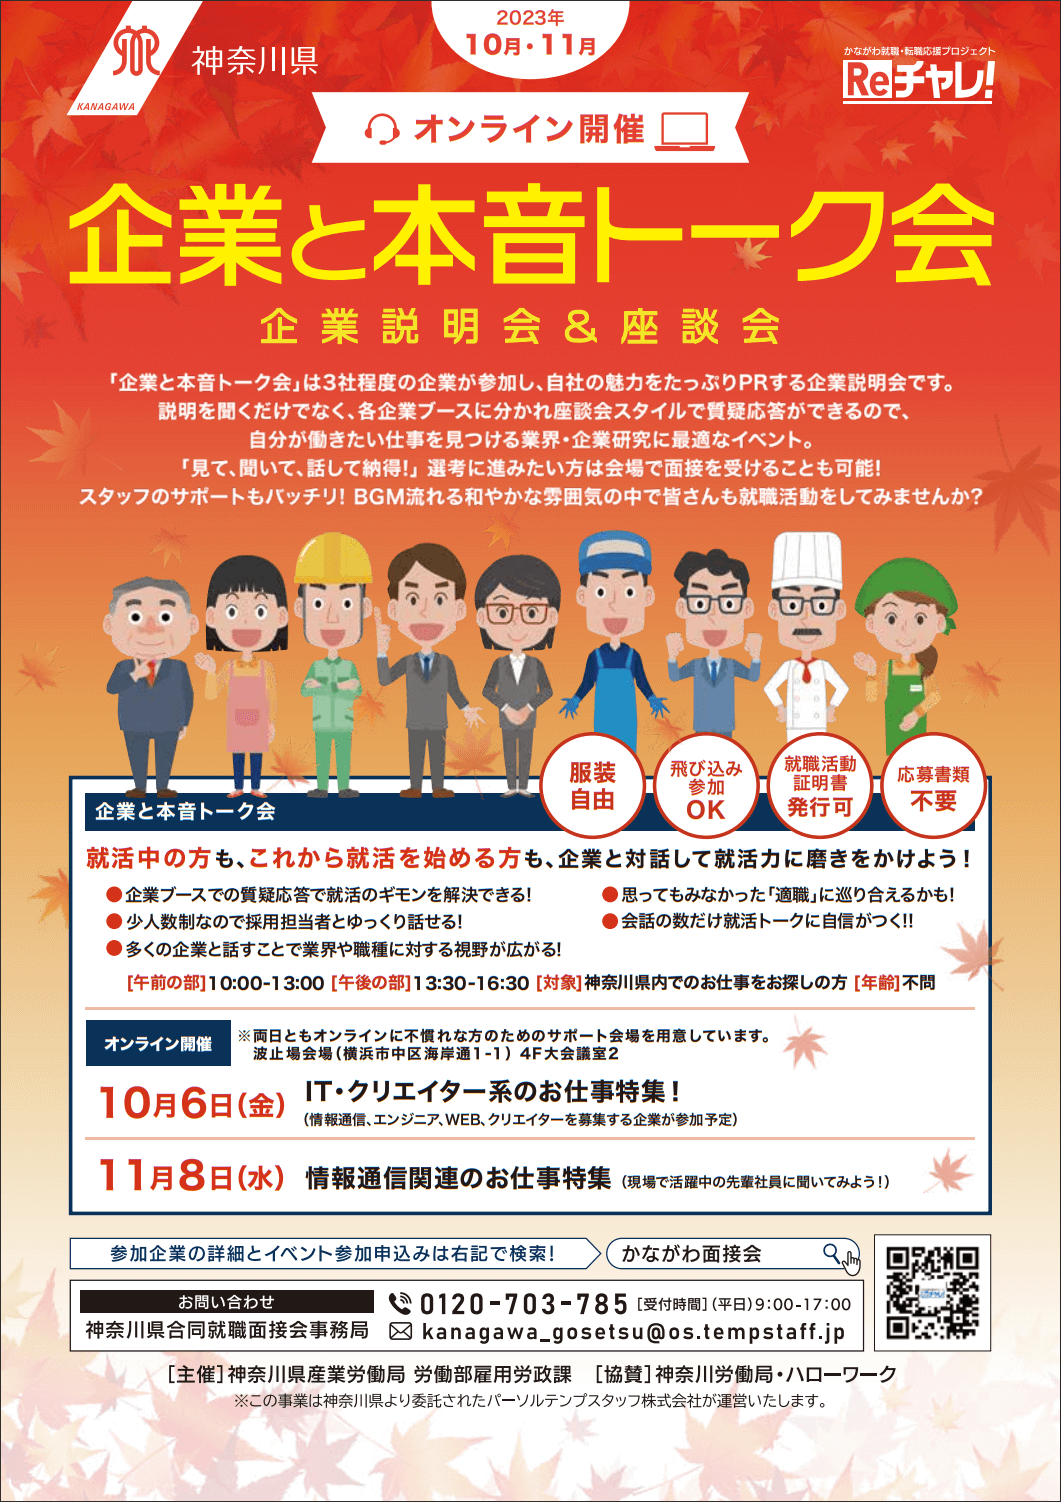 202310-11_神奈川県_企業と本音トーク会